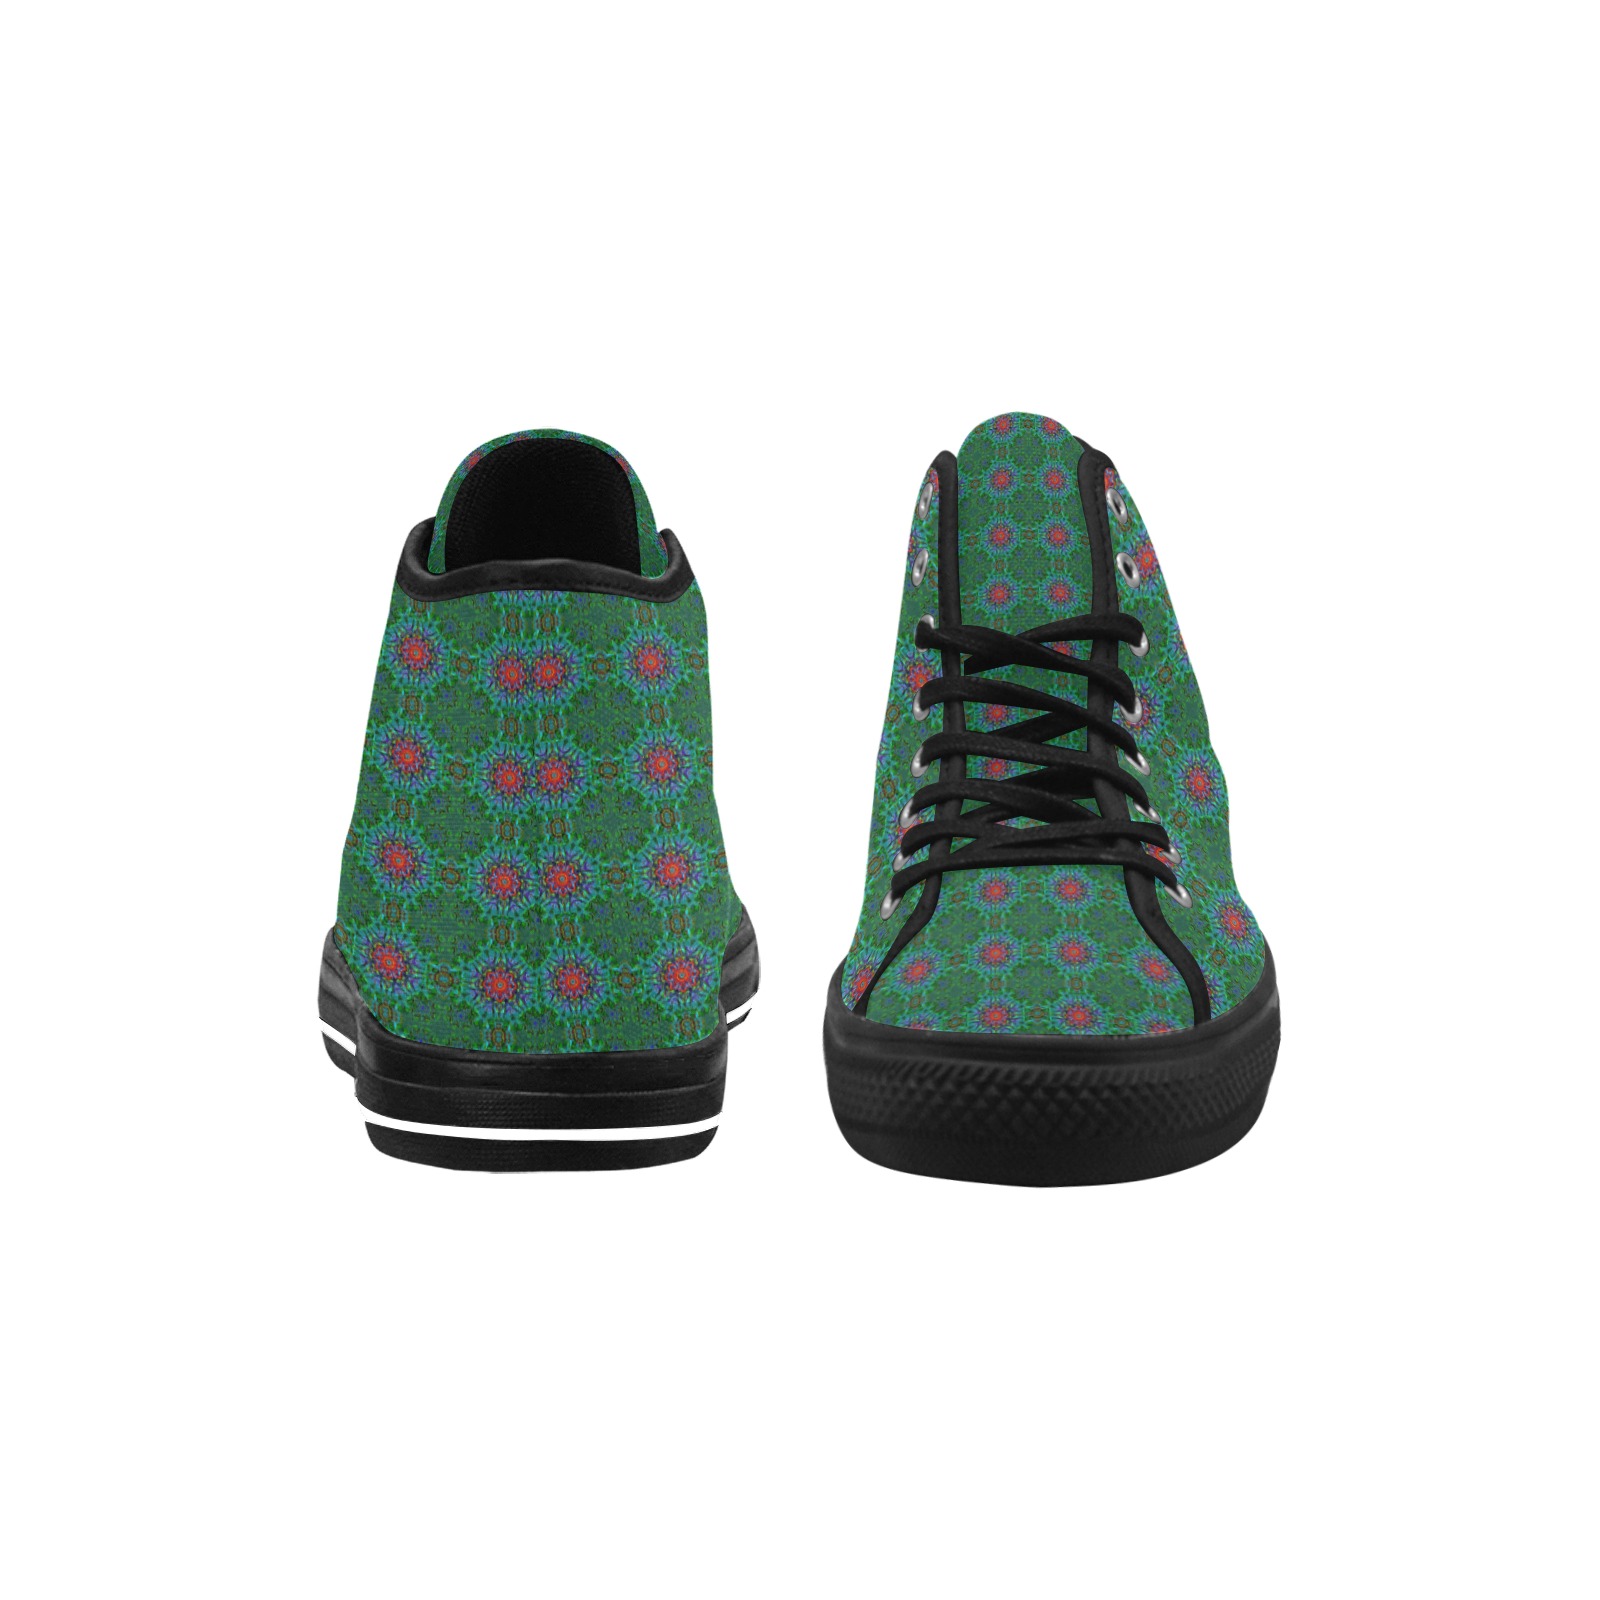 Confianza textile texture mandala pattern Vancouver H Men's Canvas Shoes (1013-1)